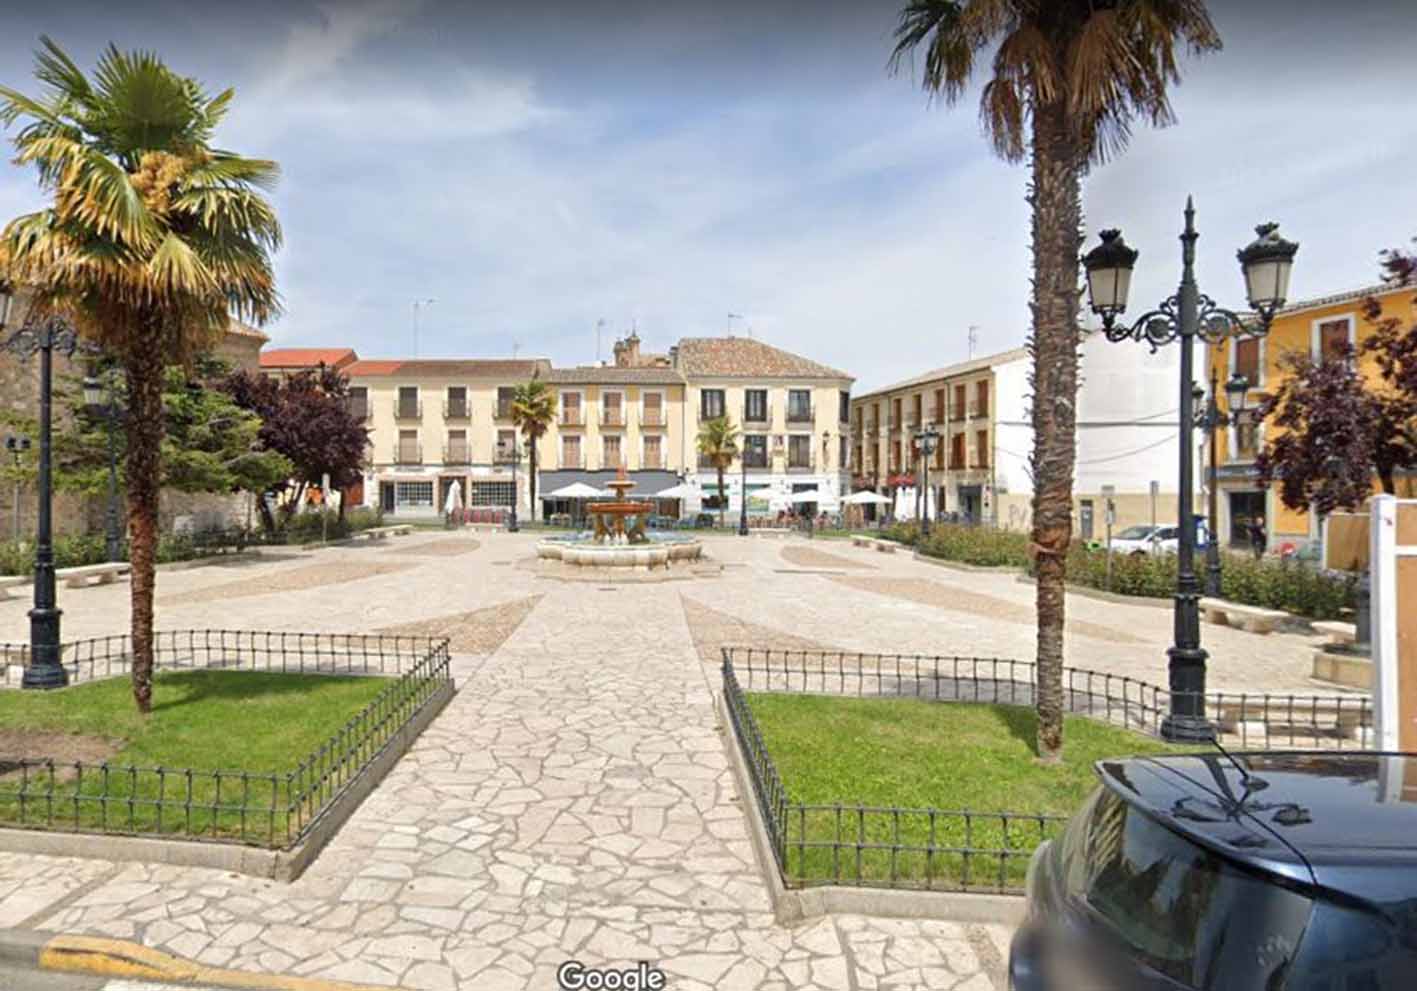 Atropellan a cuatro personas en la Plaza Hermanos Fernández Criado de Illescas. Foto: Google Maps.